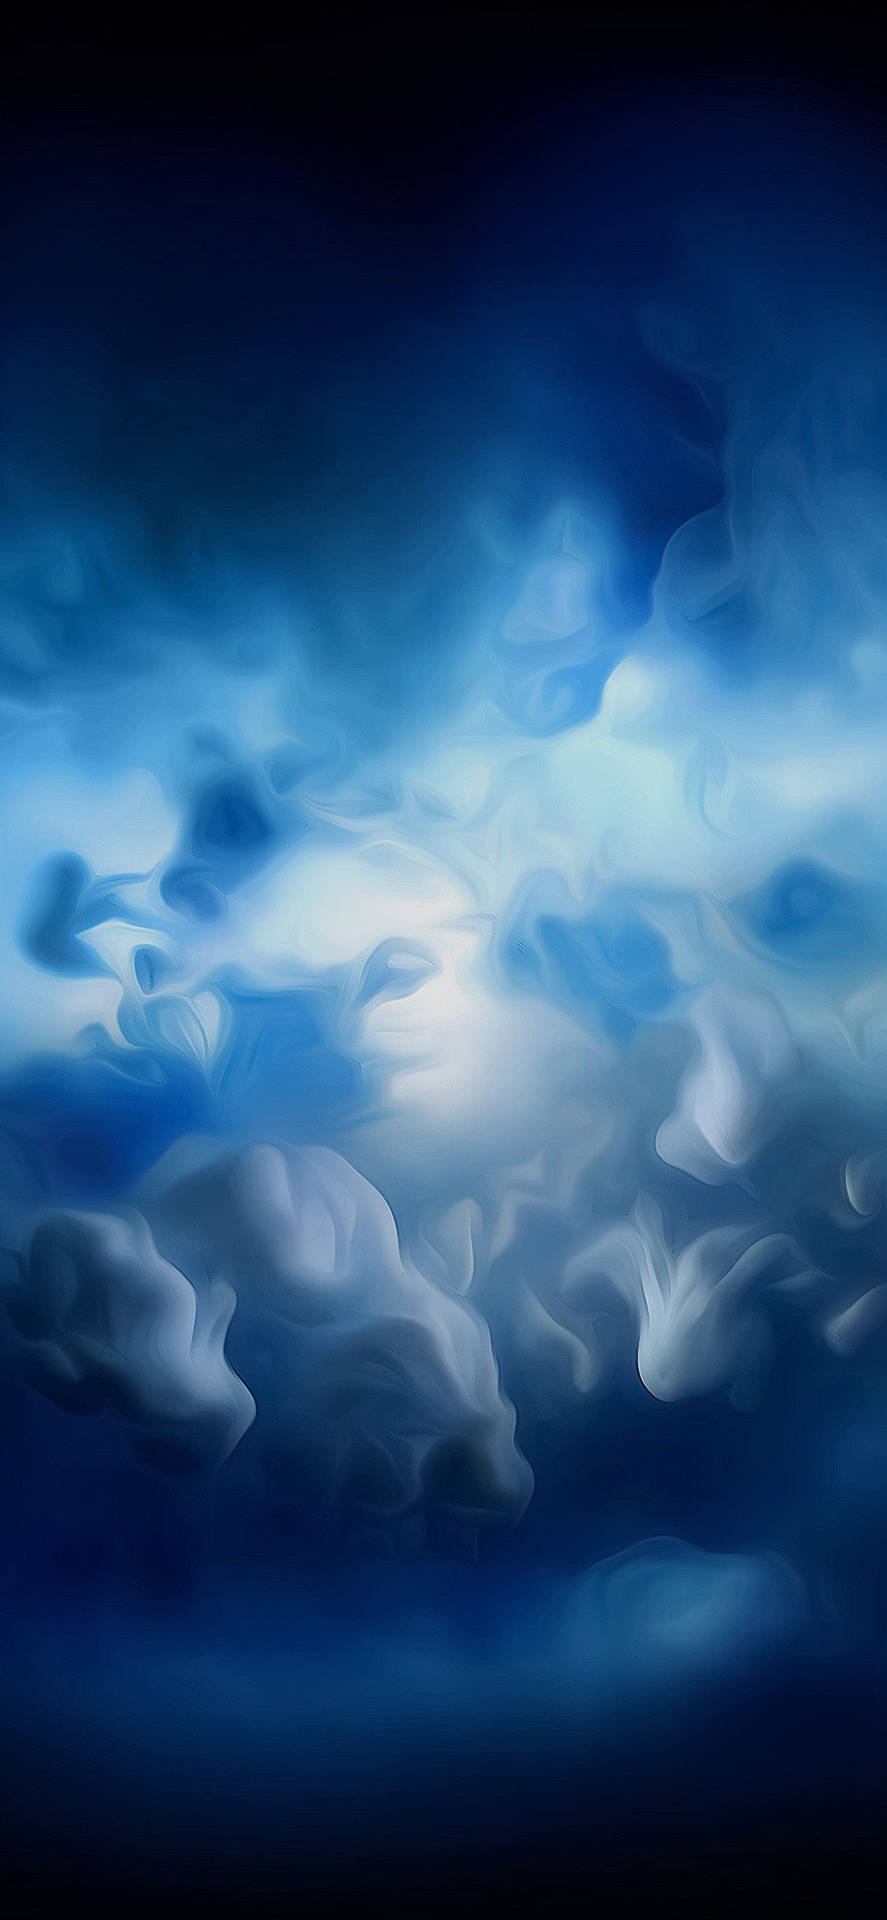 Dynamic Blue Smoke Clouds Wallpaper